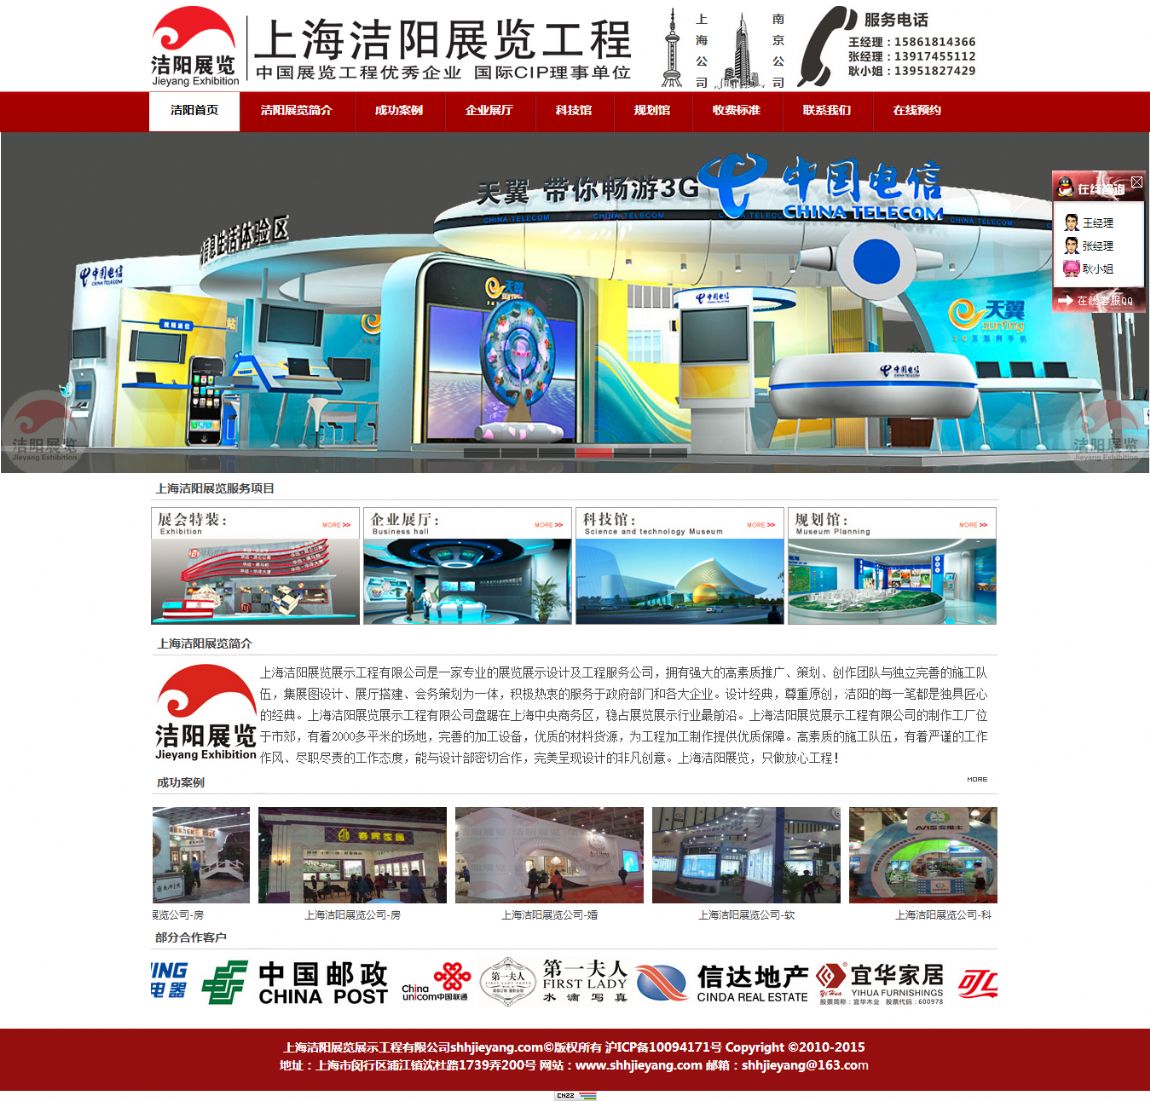 上海洁阳展览示工程有限公司